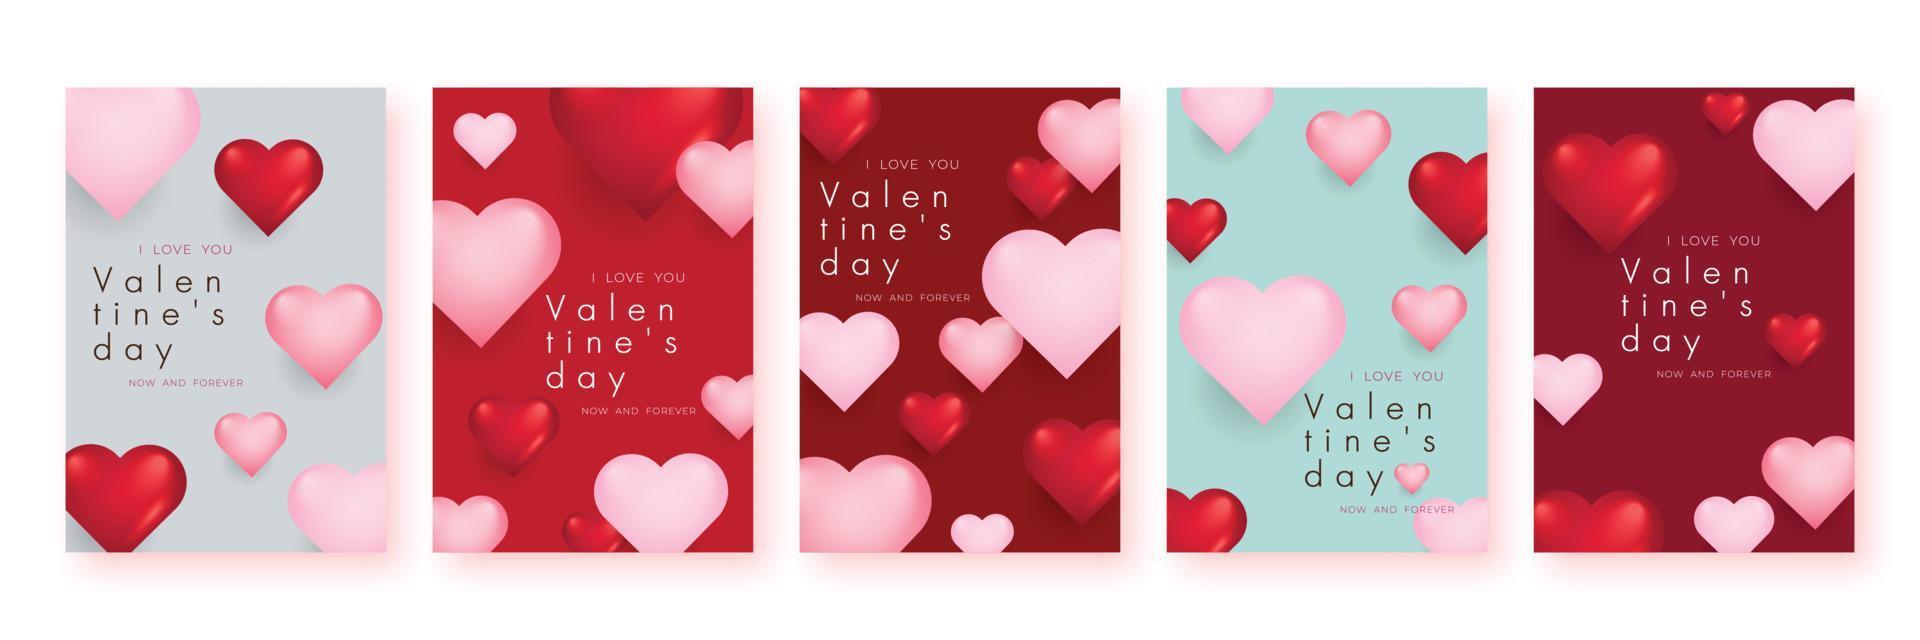 reeks van Valentijnsdag dag uitverkoop poster of banier achtergrond. vector illustratie.